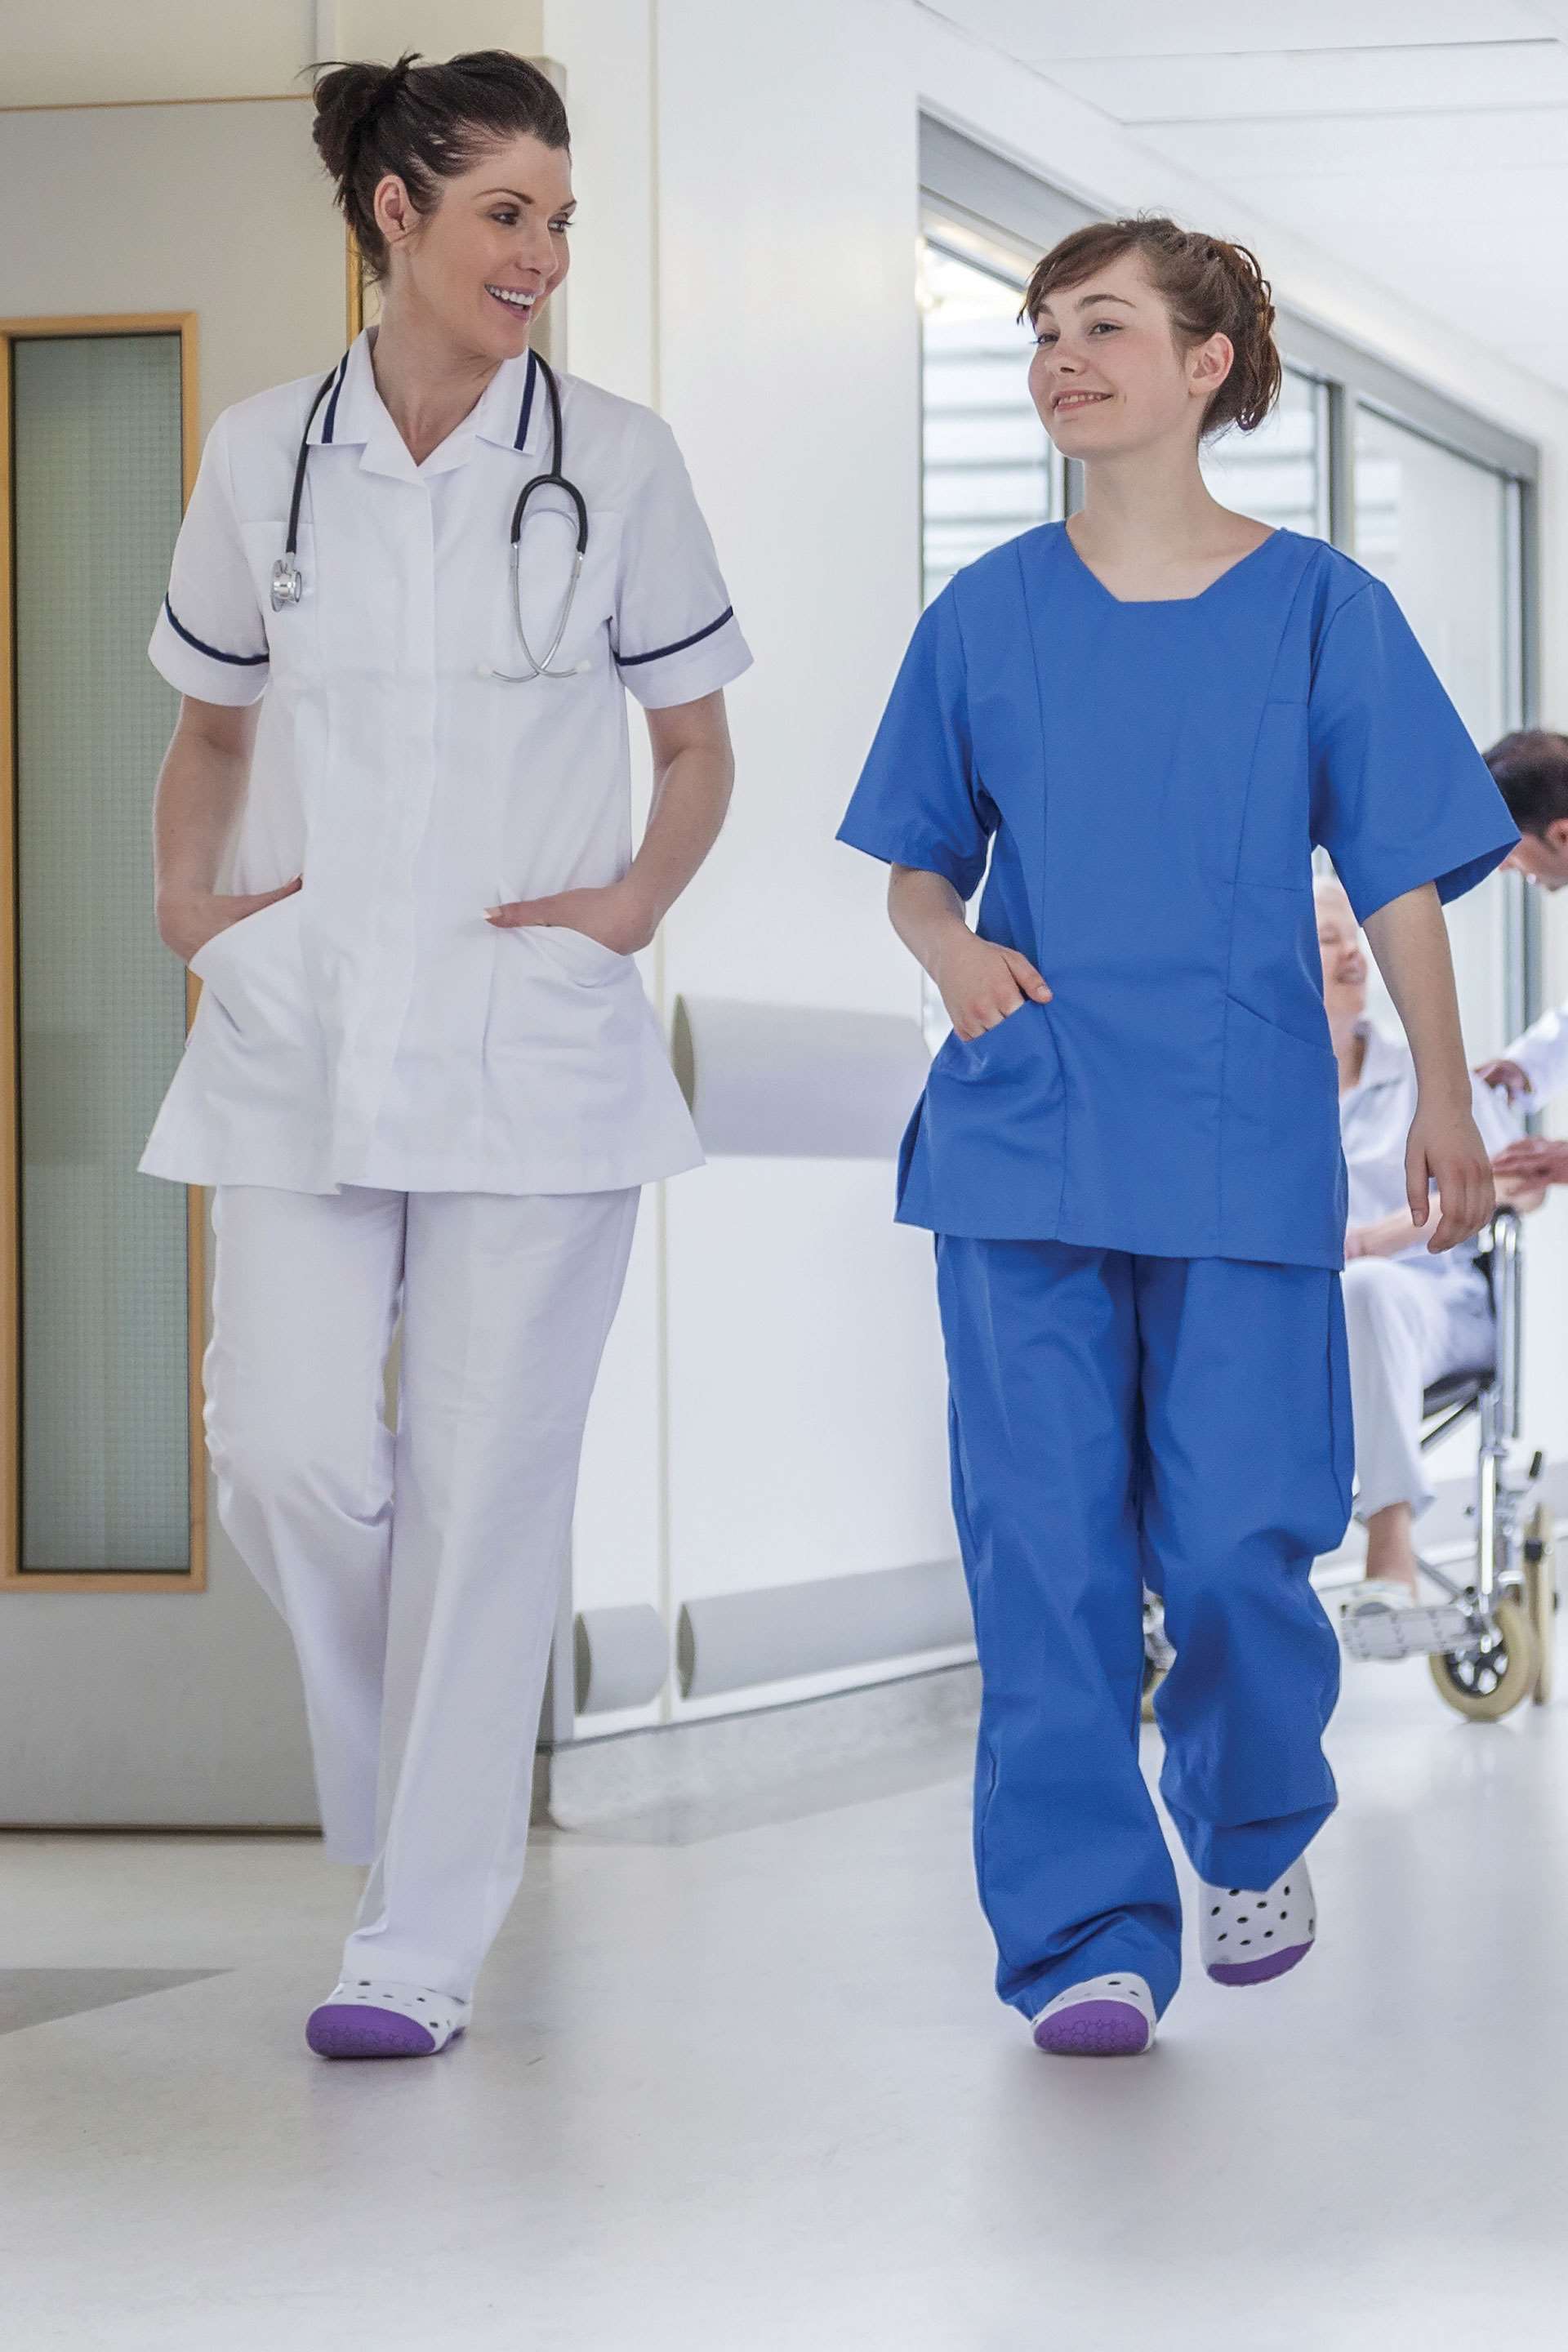 Two nurses walking down a hospital hallway